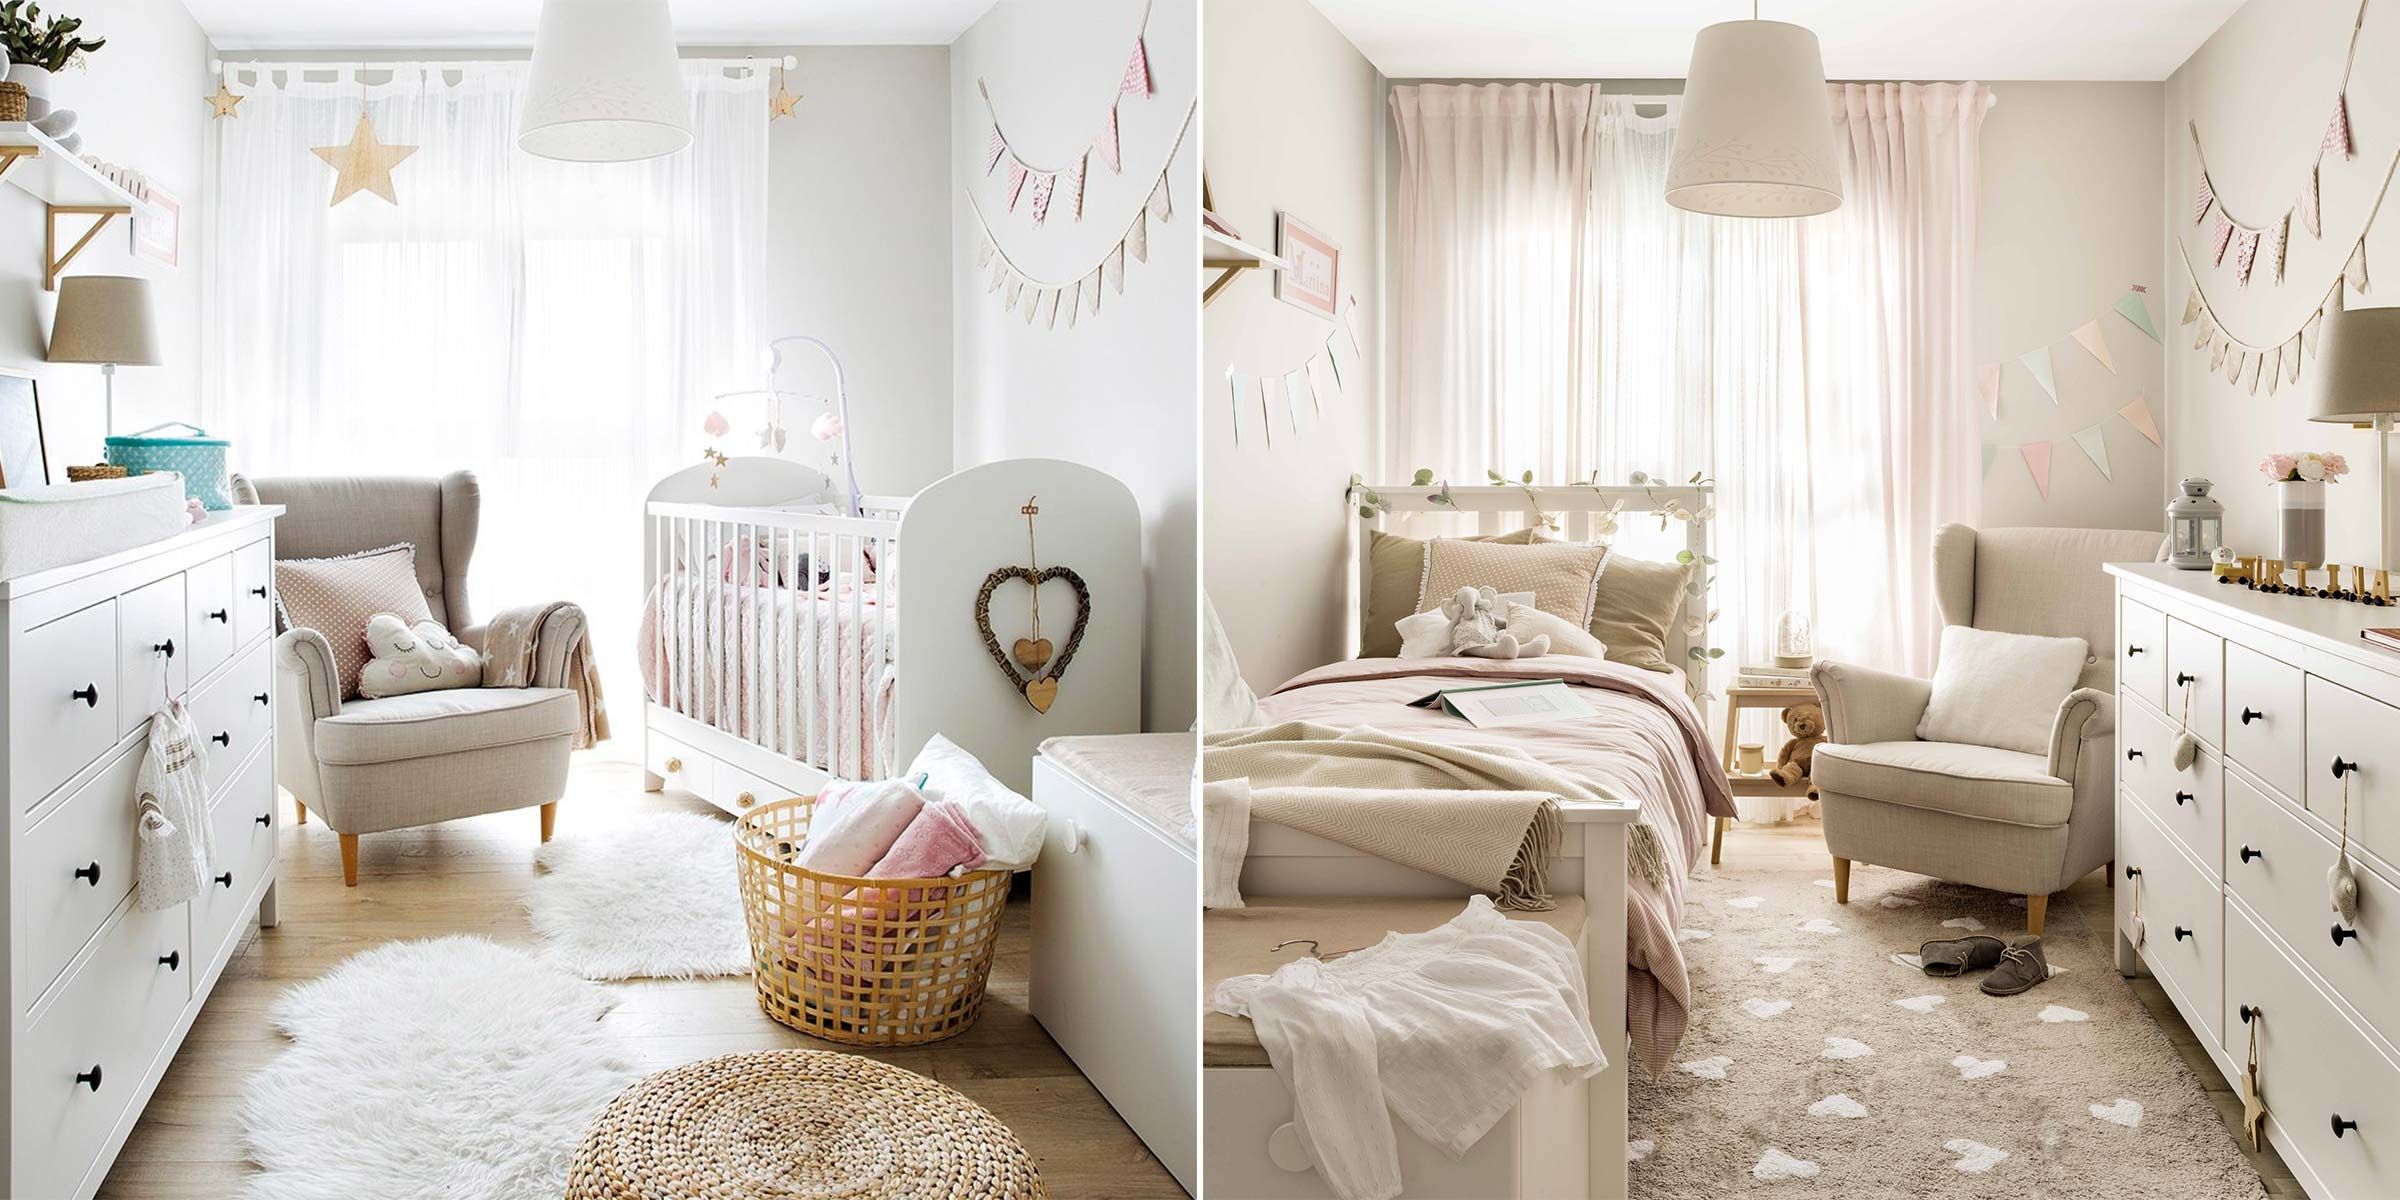 Una preciosa habitación infantil de estilo nórdico para una niña